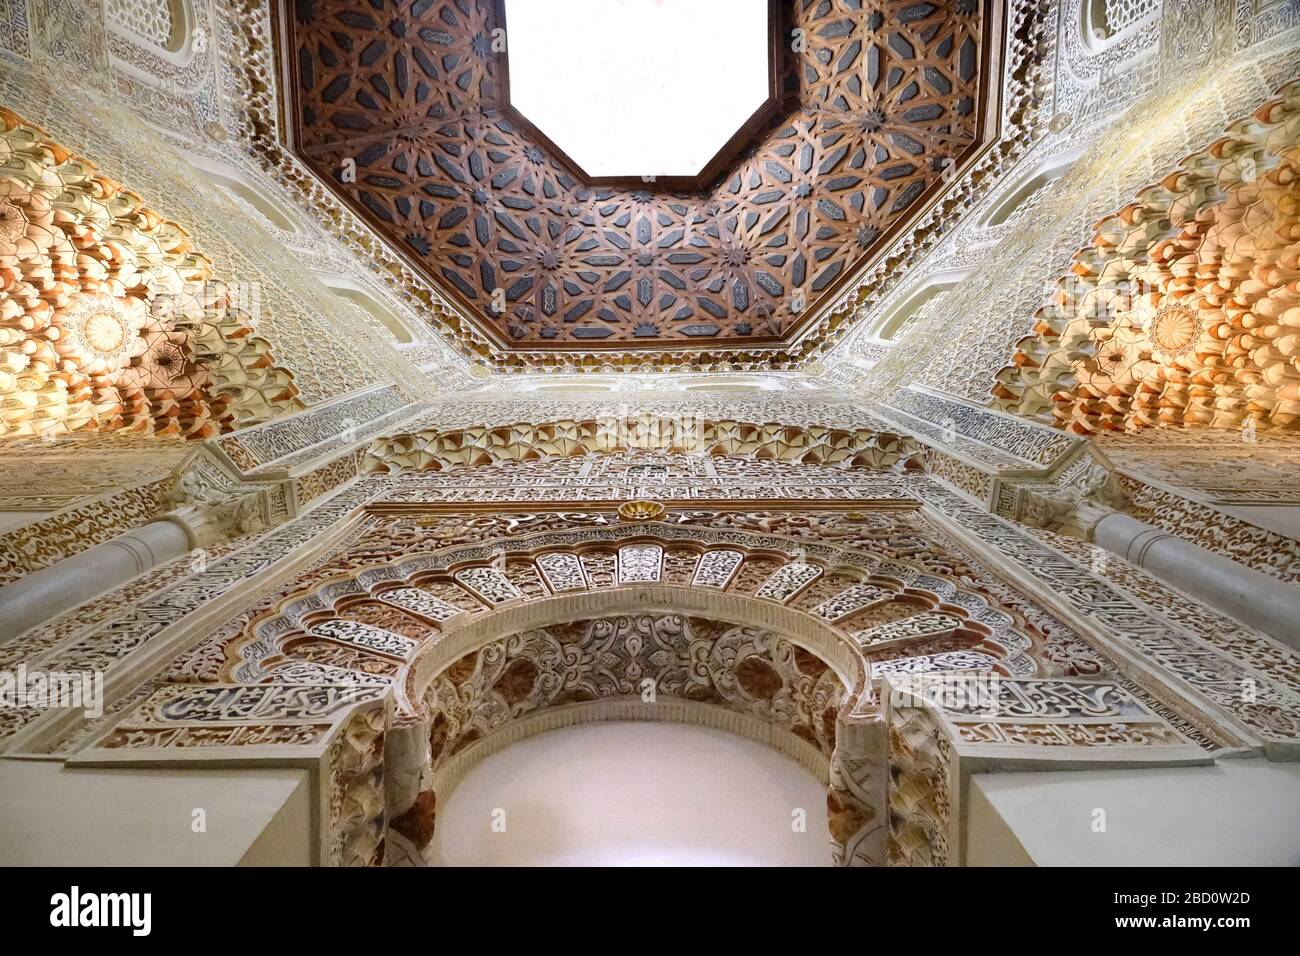 Spanien, Andalusien, Grenade, Palacio de la Madraza, Universitätsgebäude, innen, ehemaliger Gebetsraum mit maurischen Fresken Banque D'Images